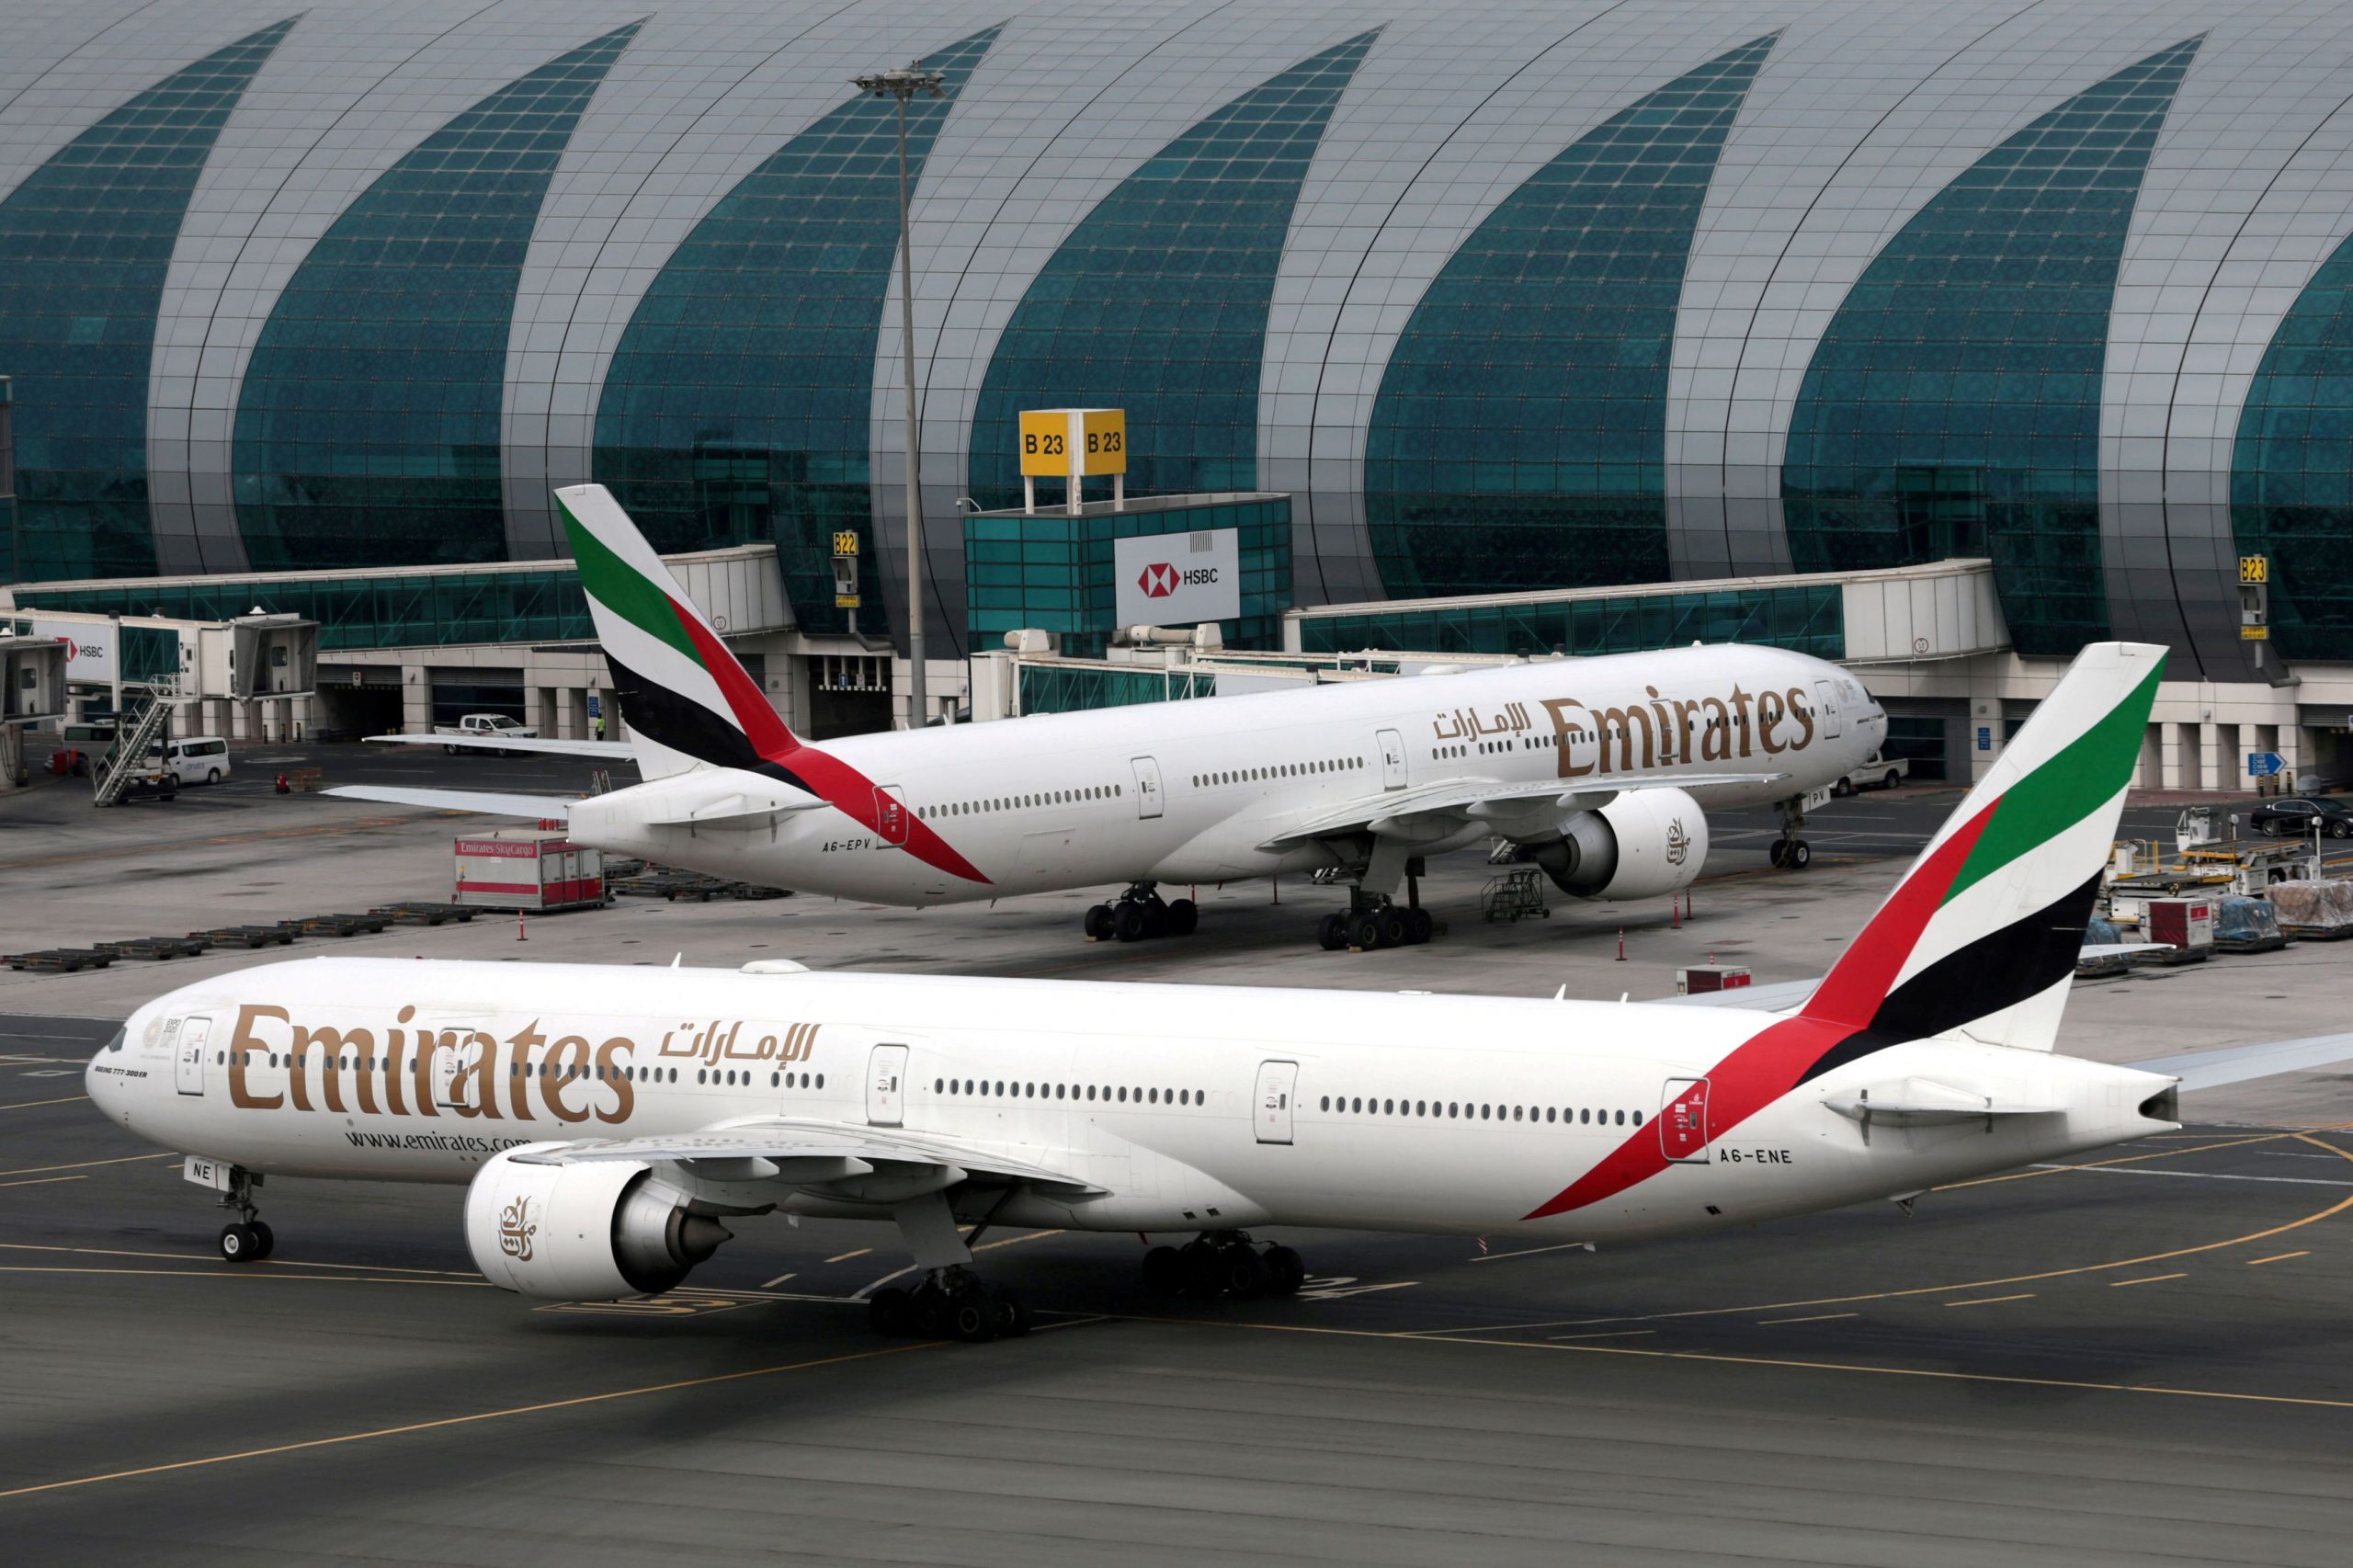 Καλίντ Αλ Ζαρούνι: «Η Emirates συνεχίζει να επενδύει στη συνεργασία με την Ελλάδα»